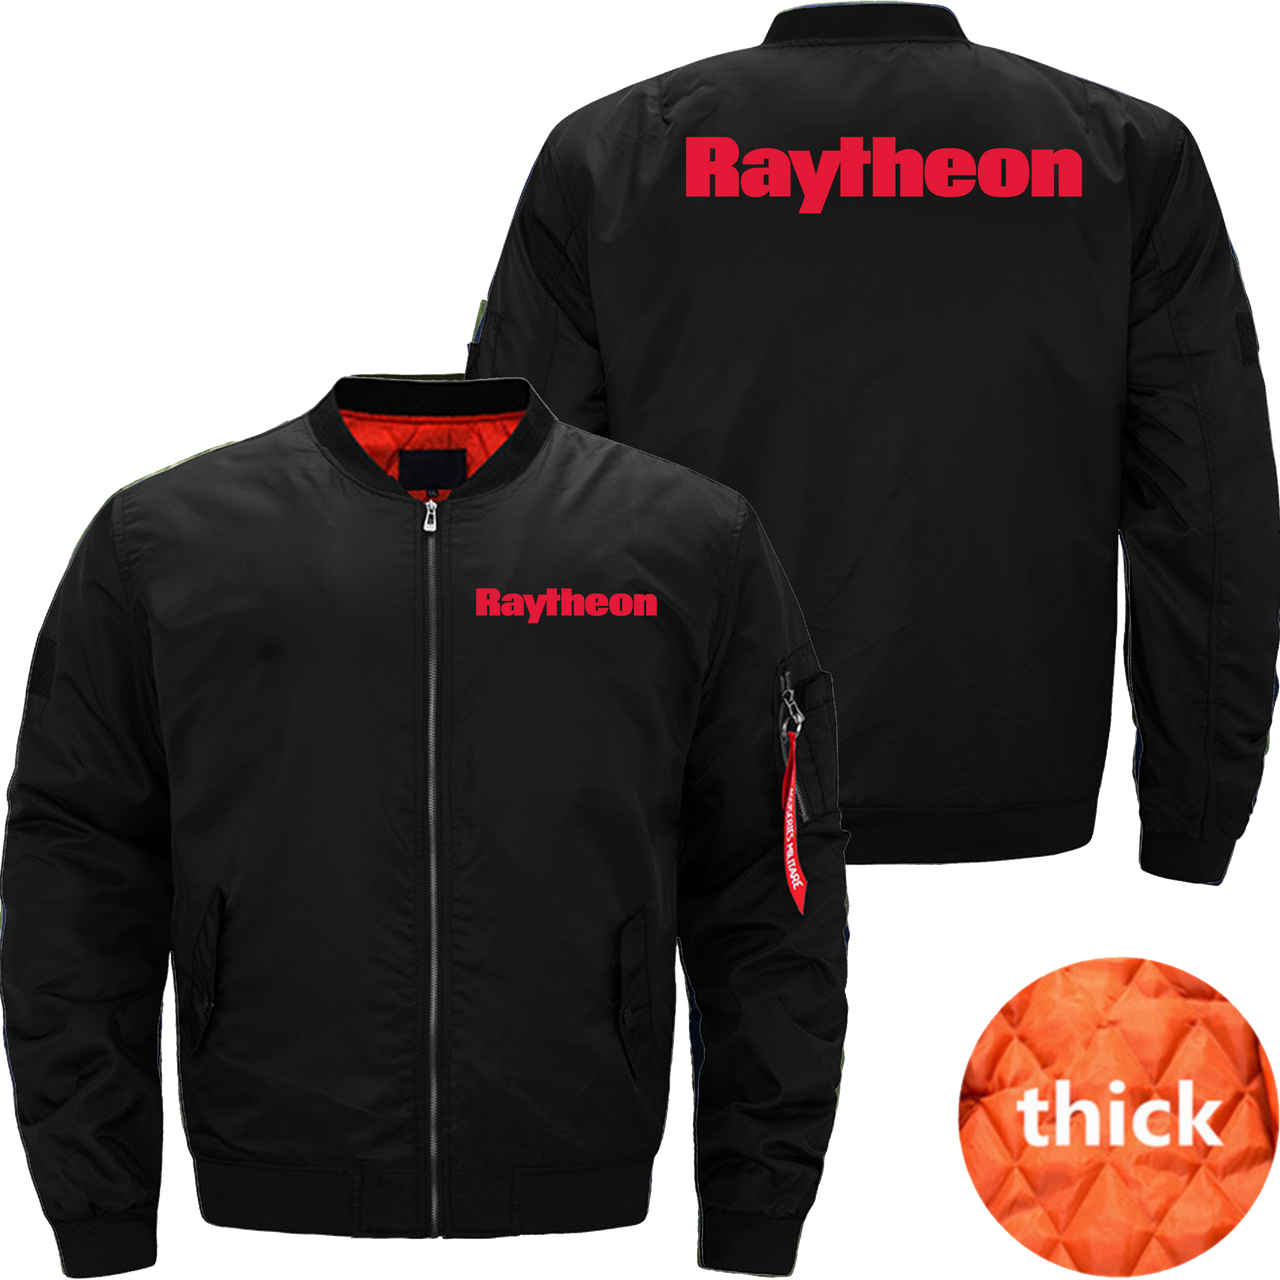 Raytheon Jacket